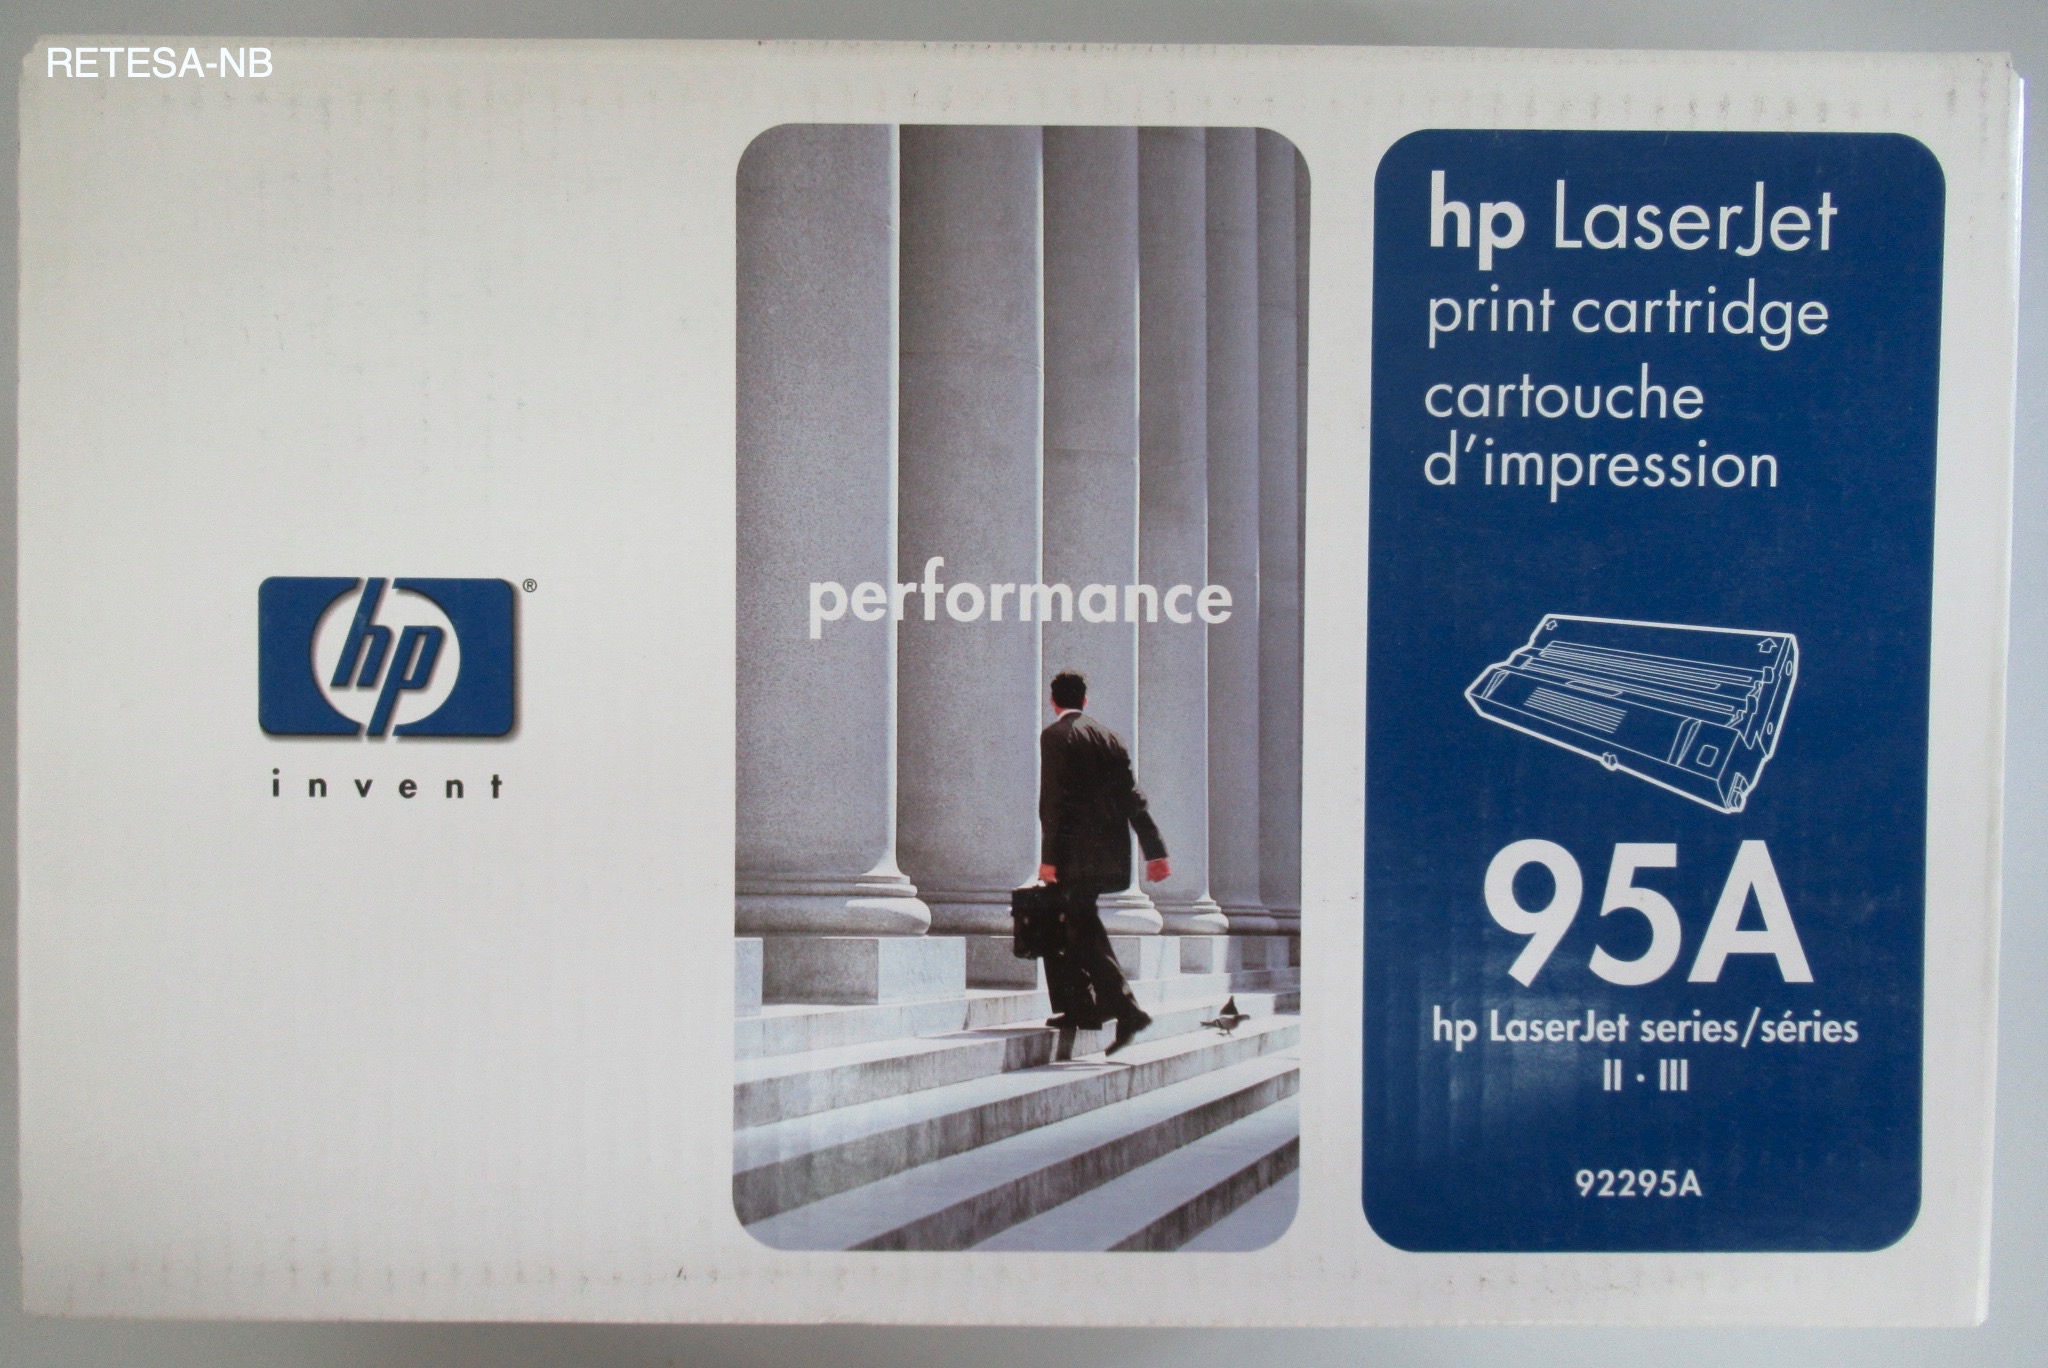 Toner HP 92295A für HP LaserJet II/IID/III/IIID